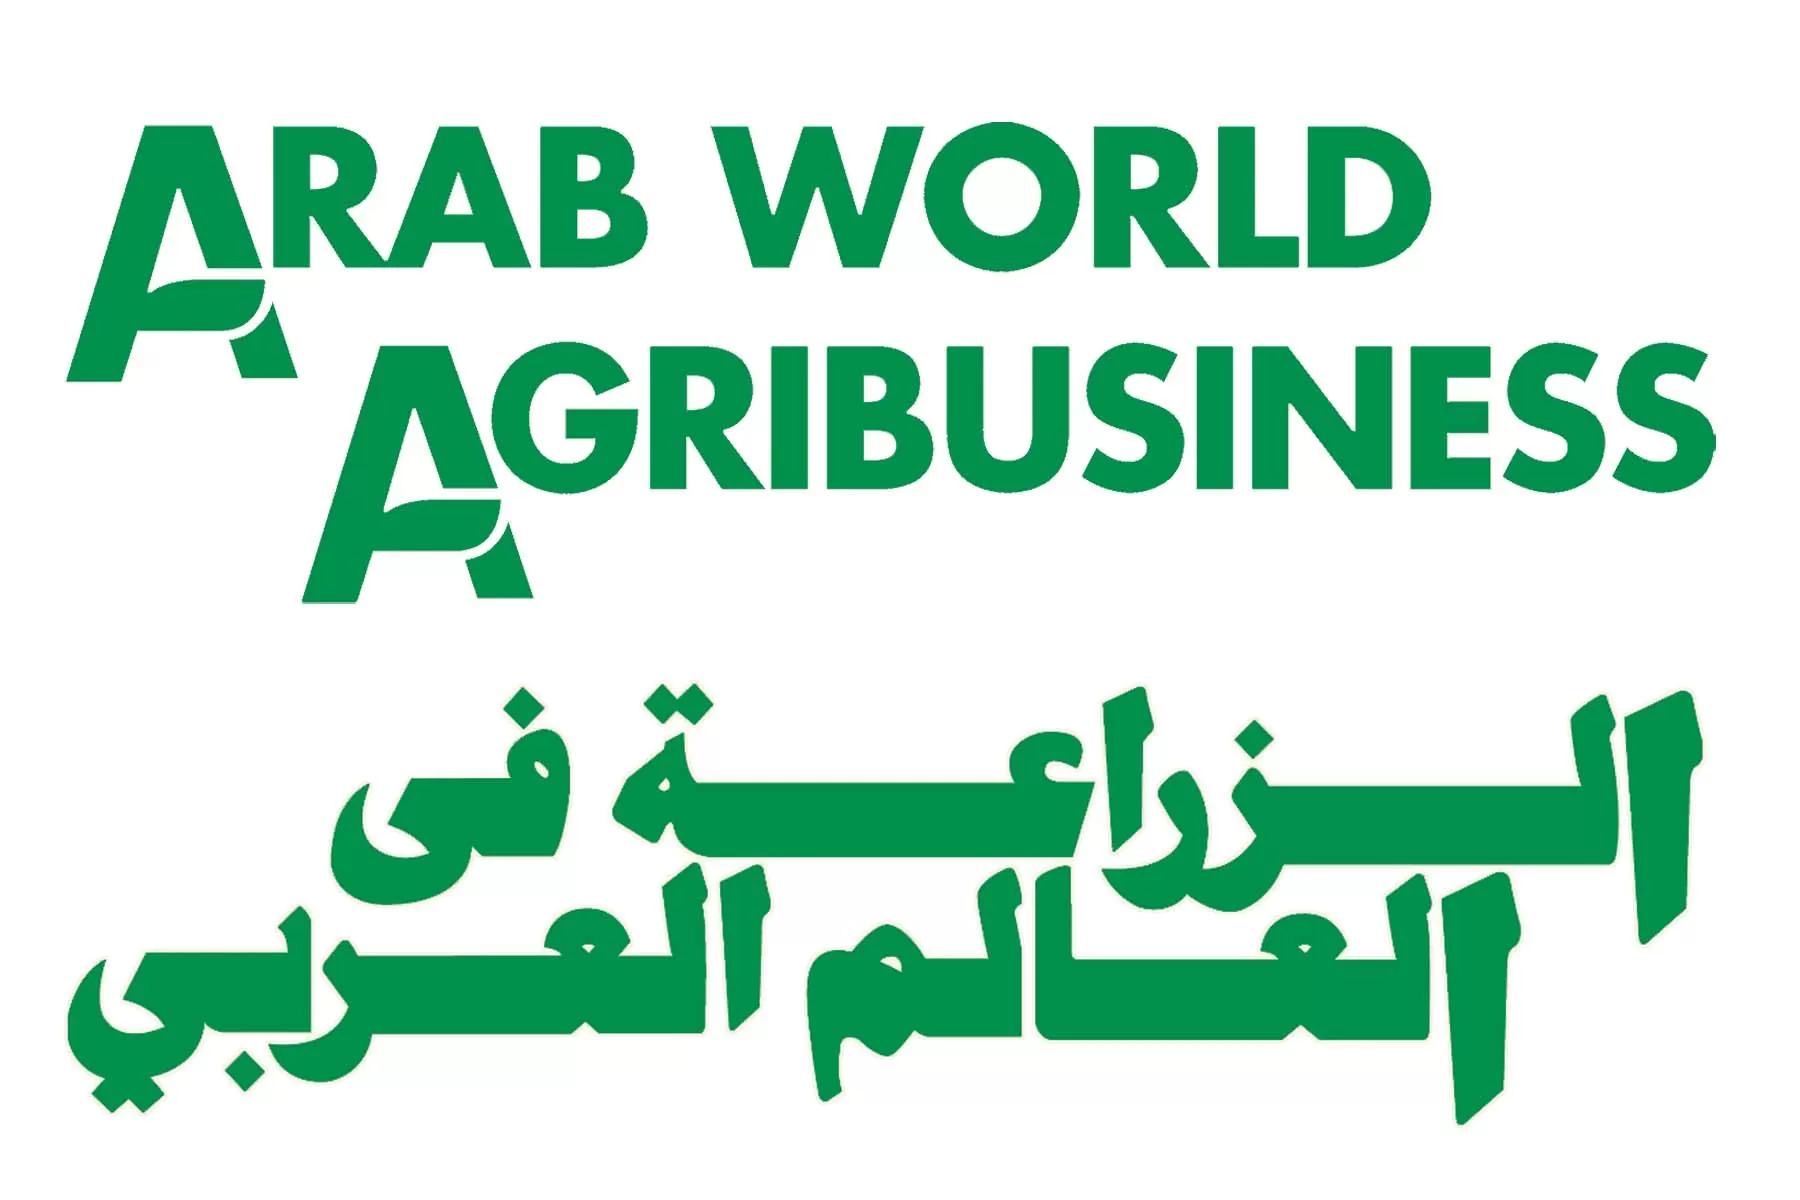 Arab World Agribusiness